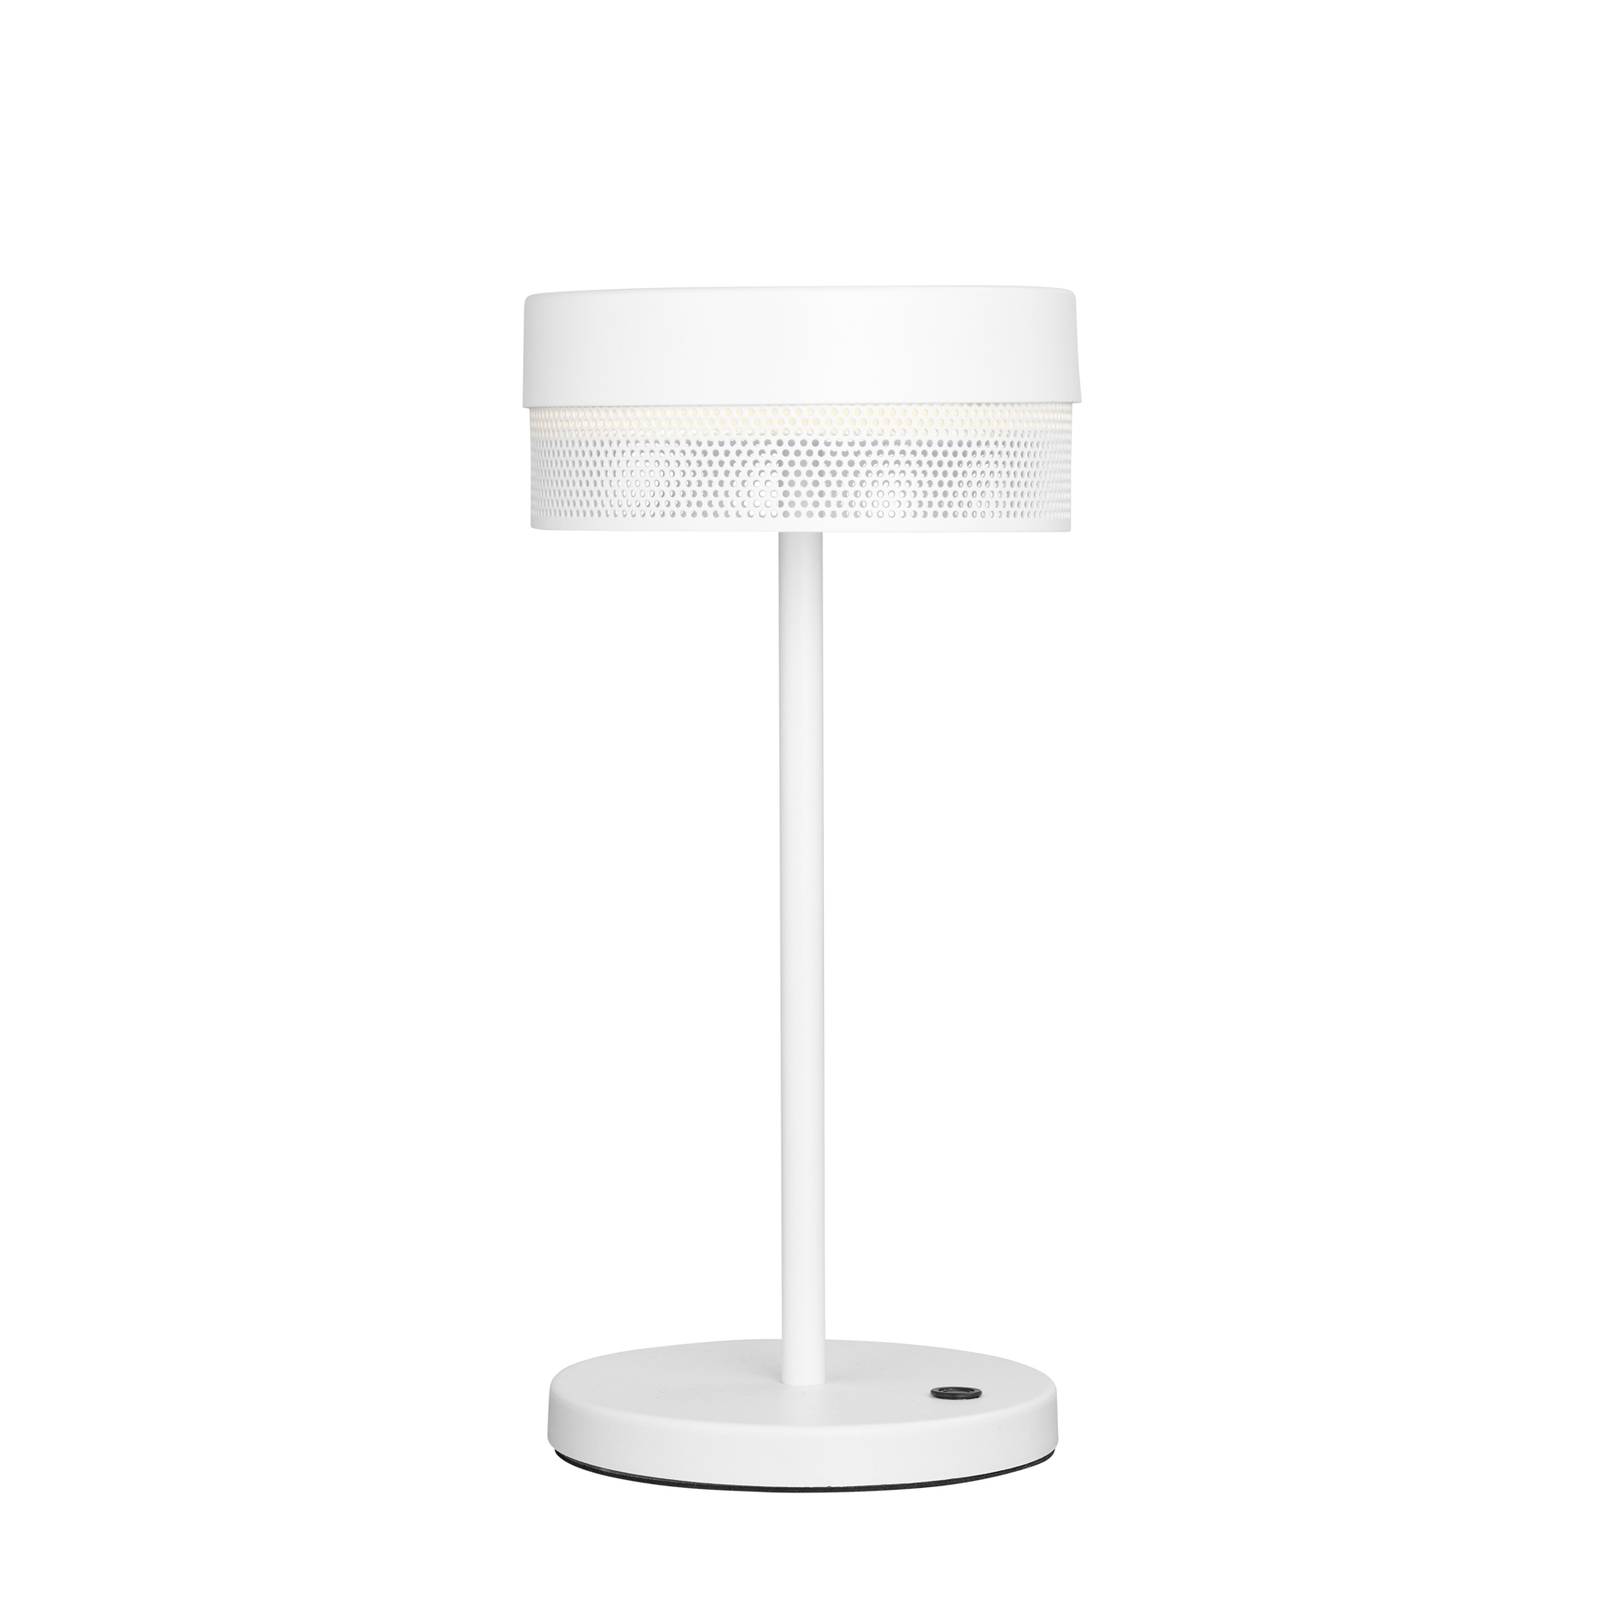 LED asztali világítás Mesh akku 30 cm magas, fehér